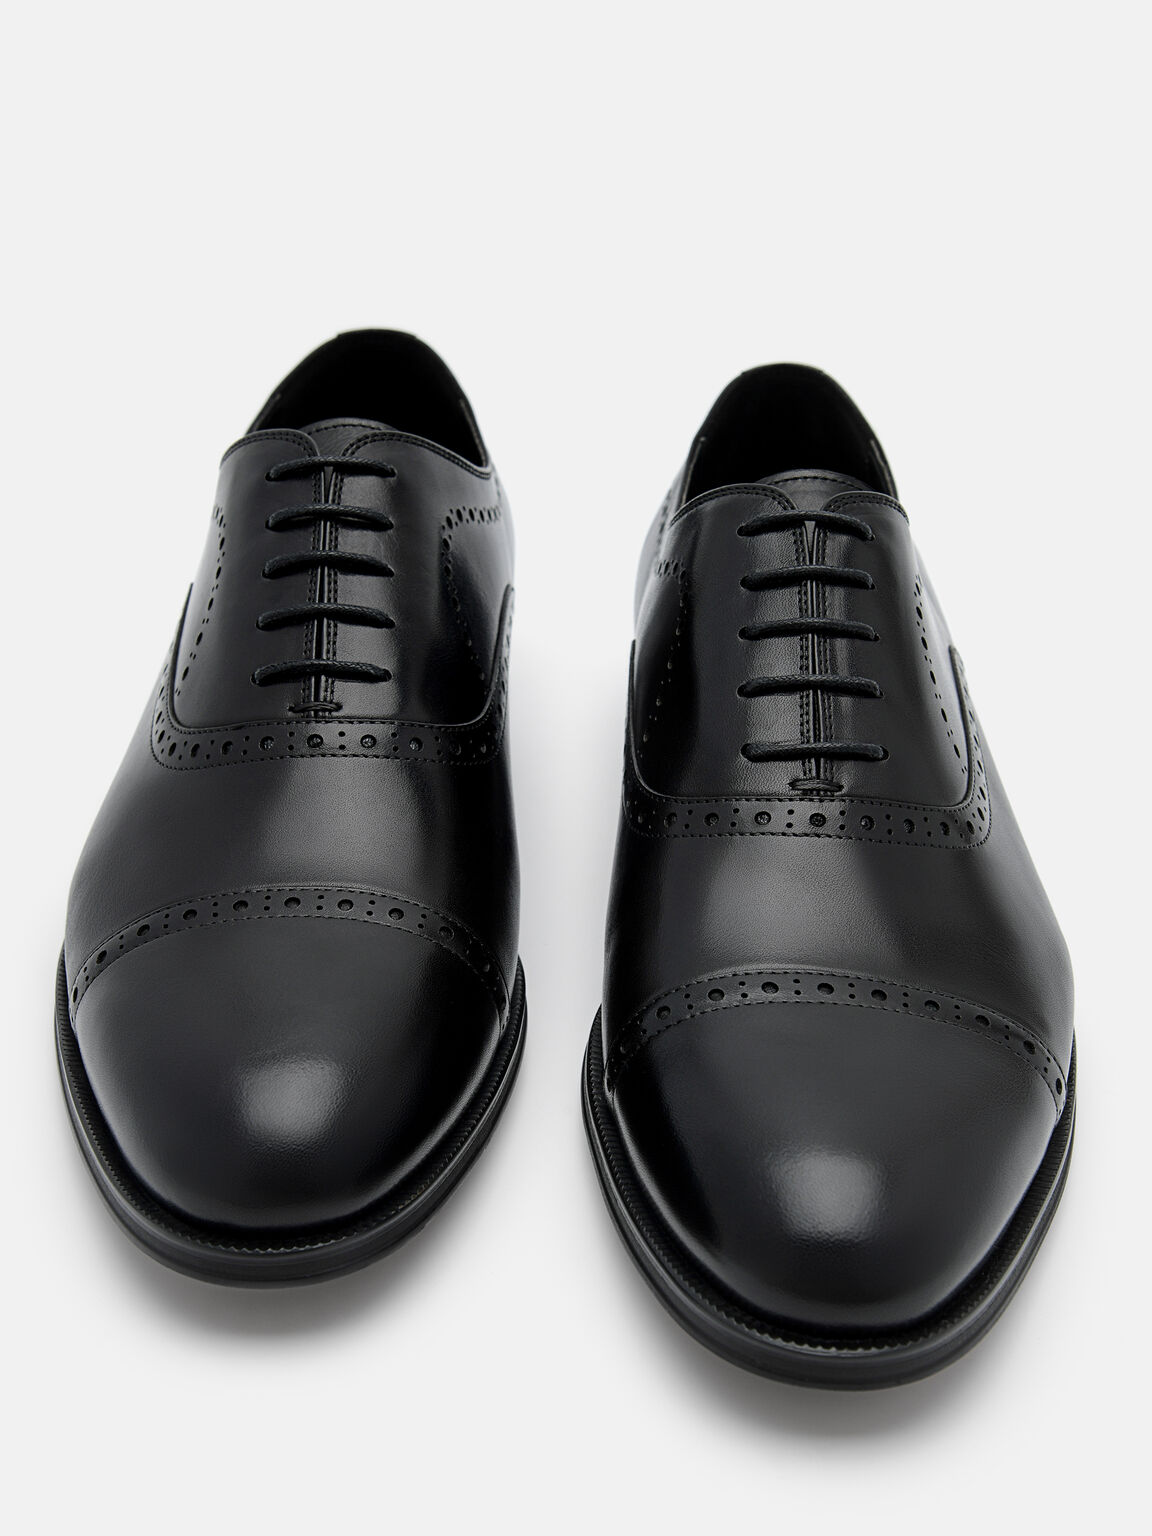 皮革布洛克牛津鞋, 黑色